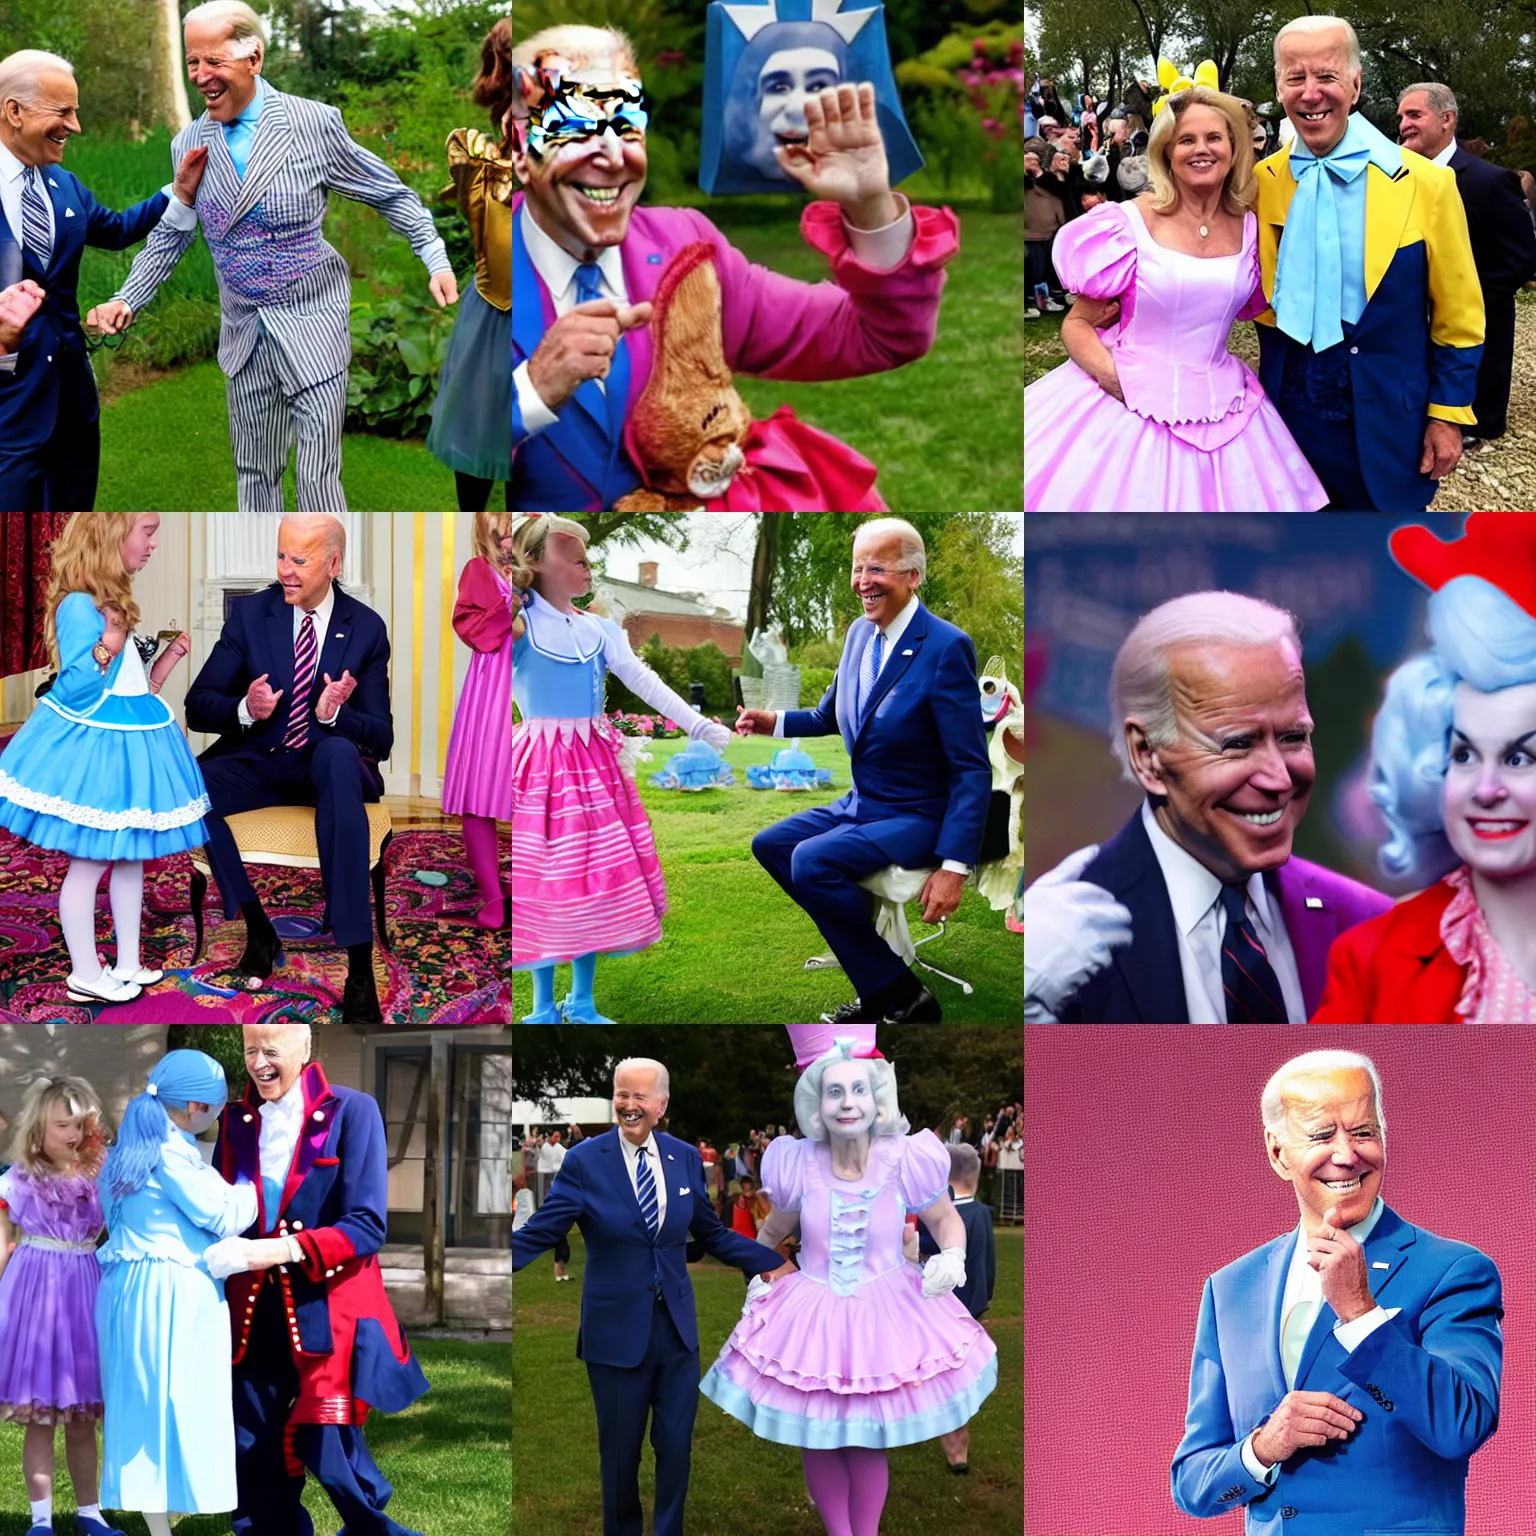 Prompt: Joe Biden dressed as Alice in Wonderland